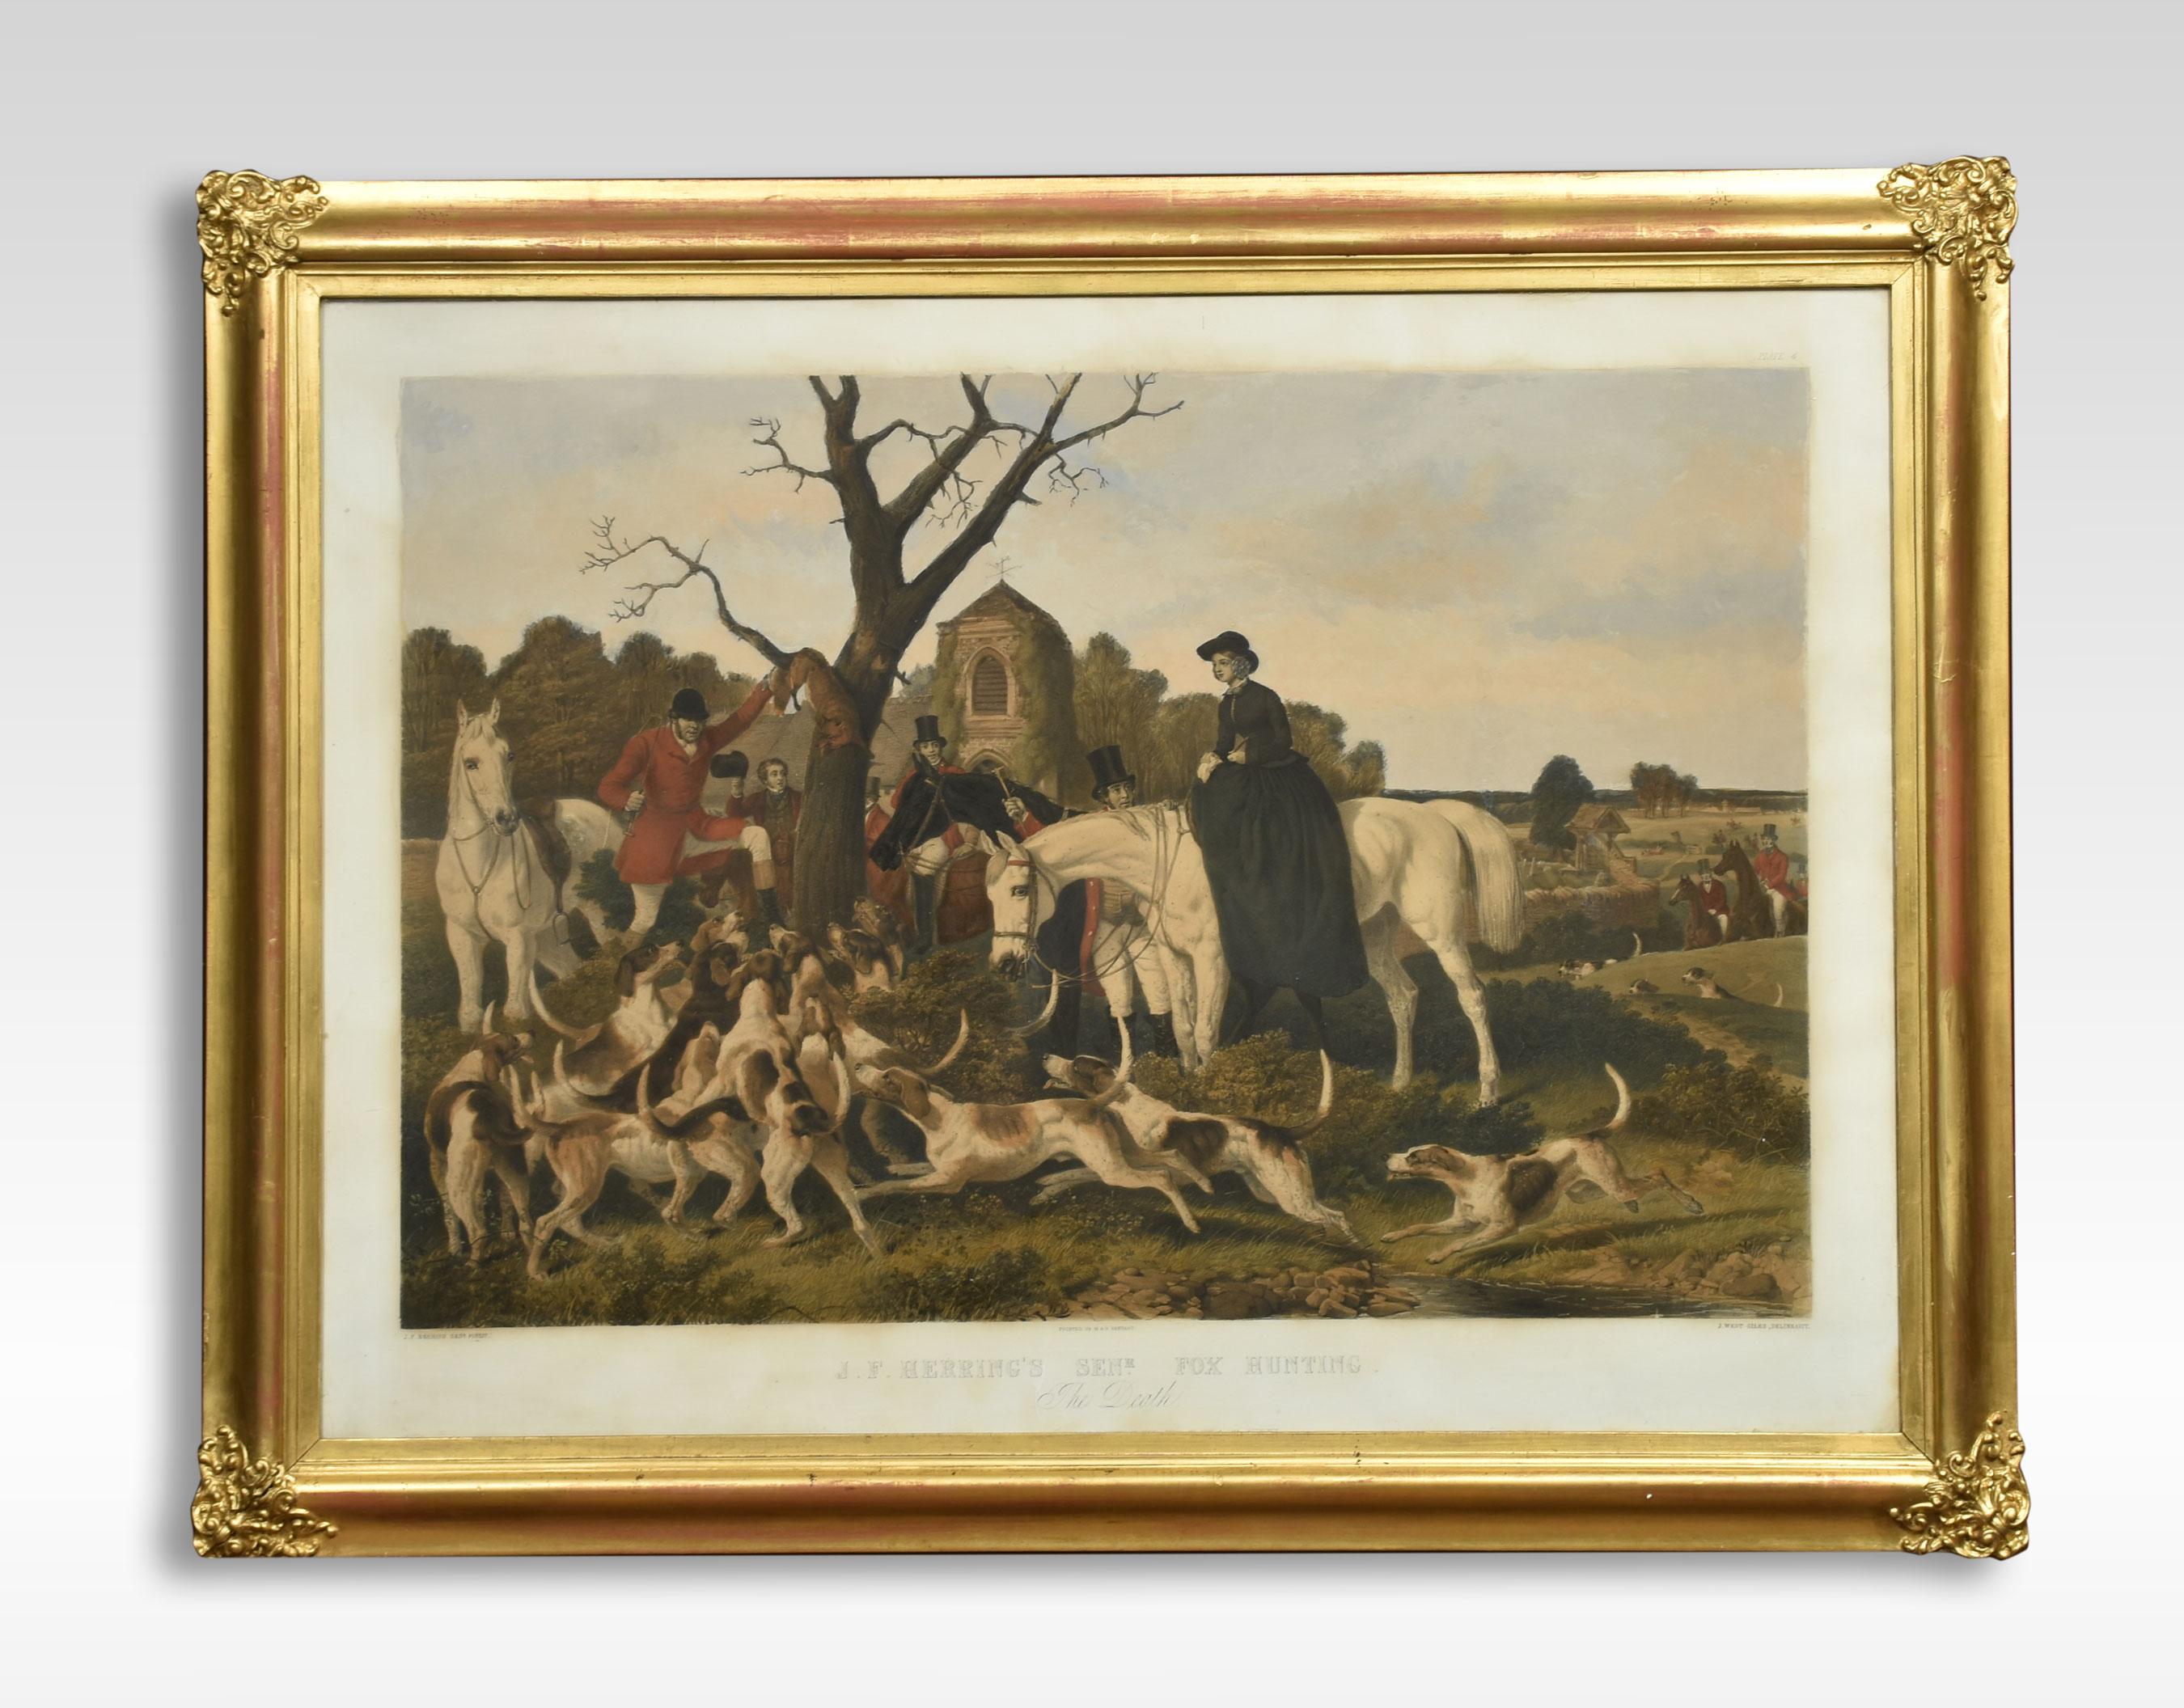 J. F. Herring, ensemble de quatre gravures en couleurs de chasseurs du 19e siècle dans des cadres en bois doré.
Dimensions
Hauteur 33.5 pouces
Largeur 44 pouces
Profondeur 2 pouces.